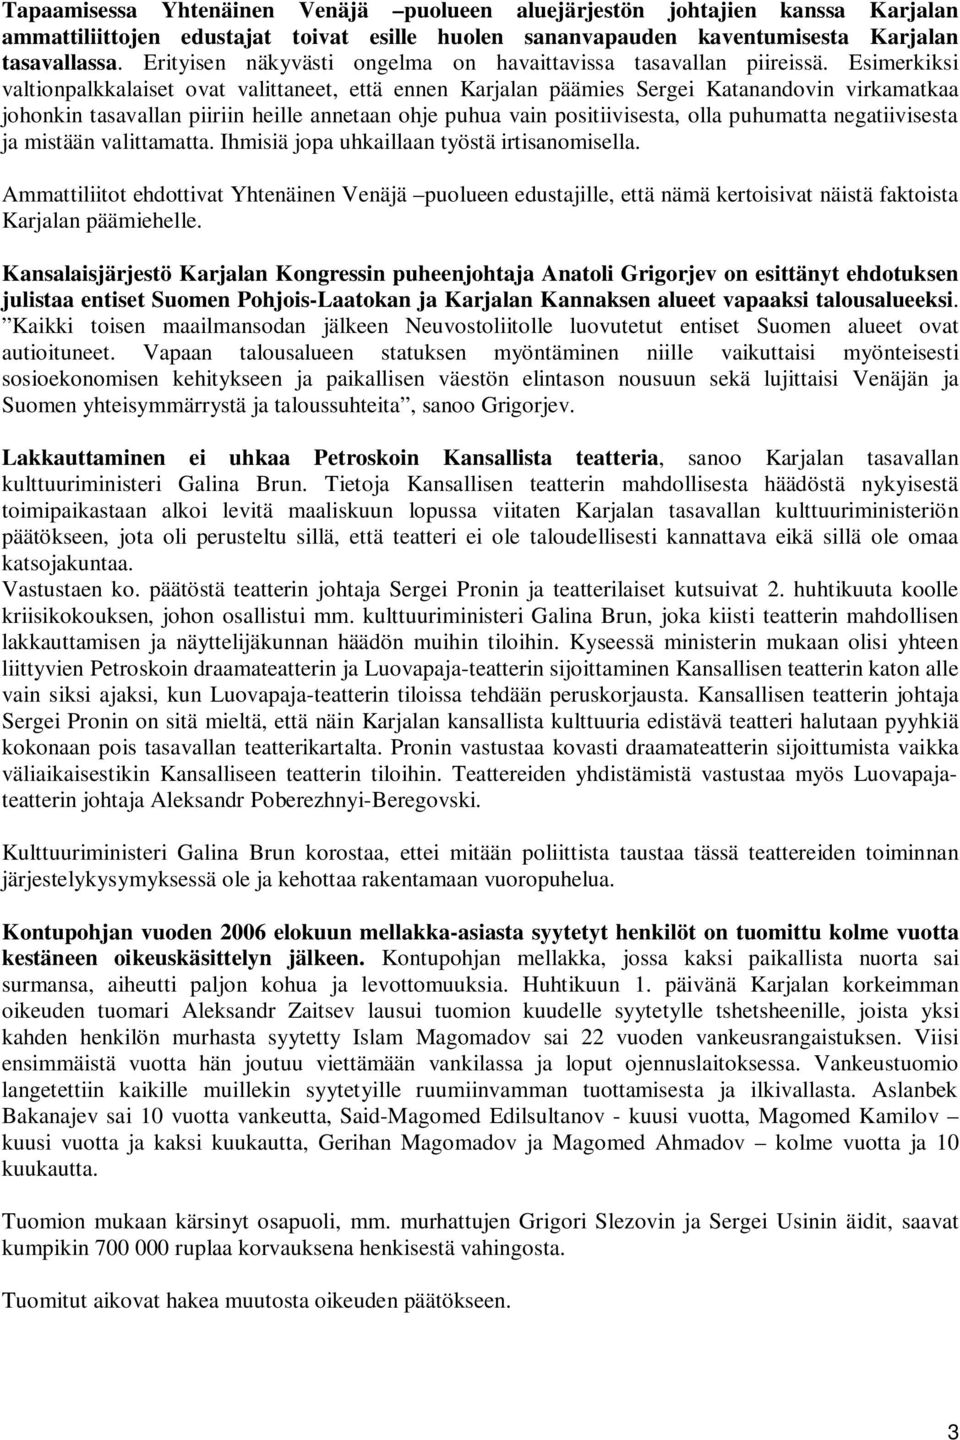 Esimerkiksi valtionpalkkalaiset ovat valittaneet, että ennen Karjalan päämies Sergei Katanandovin virkamatkaa johonkin tasavallan piiriin heille annetaan ohje puhua vain positiivisesta, olla